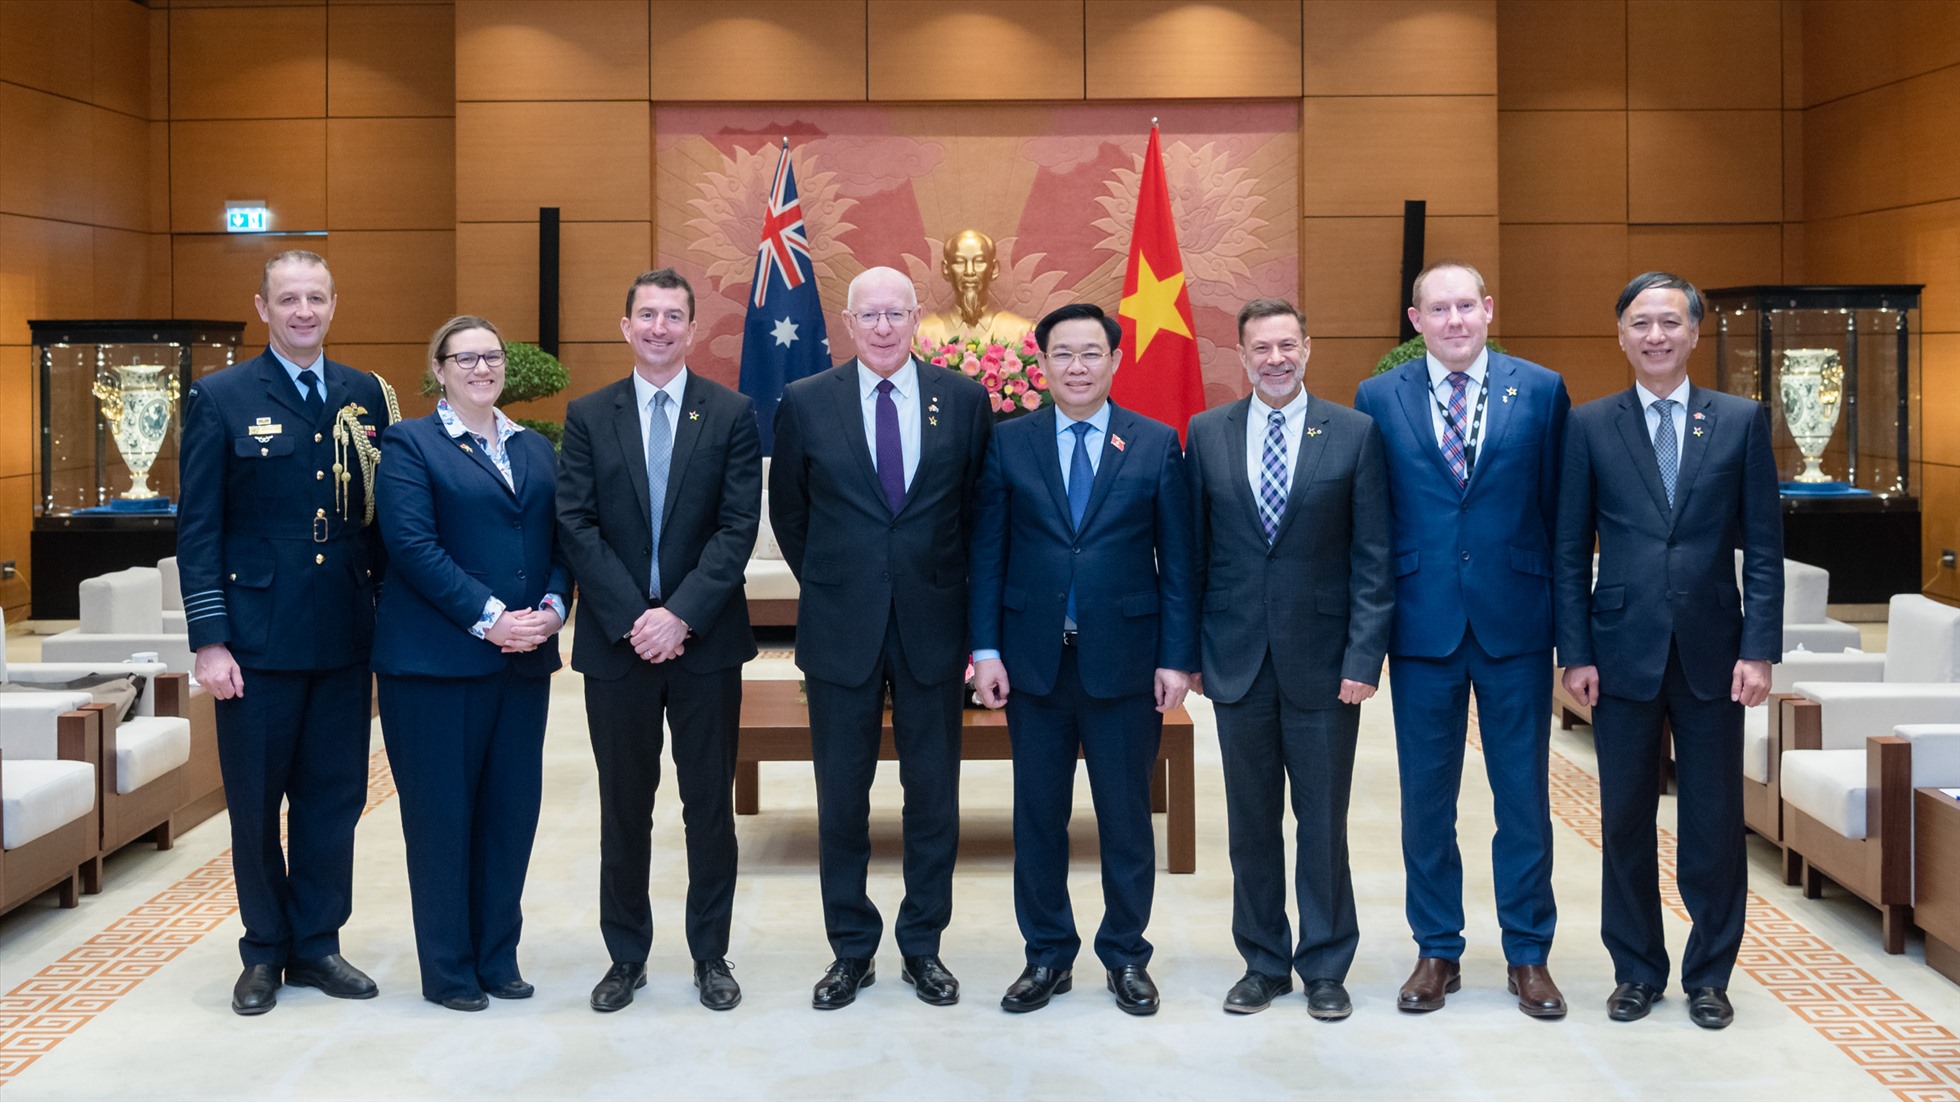 Chủ tịch Quốc hội Vương Đình Huệ và Toàn quyền Australia David Hurley cùng các đại biểu dự hội kiến. Ảnh: Quochoi.vn